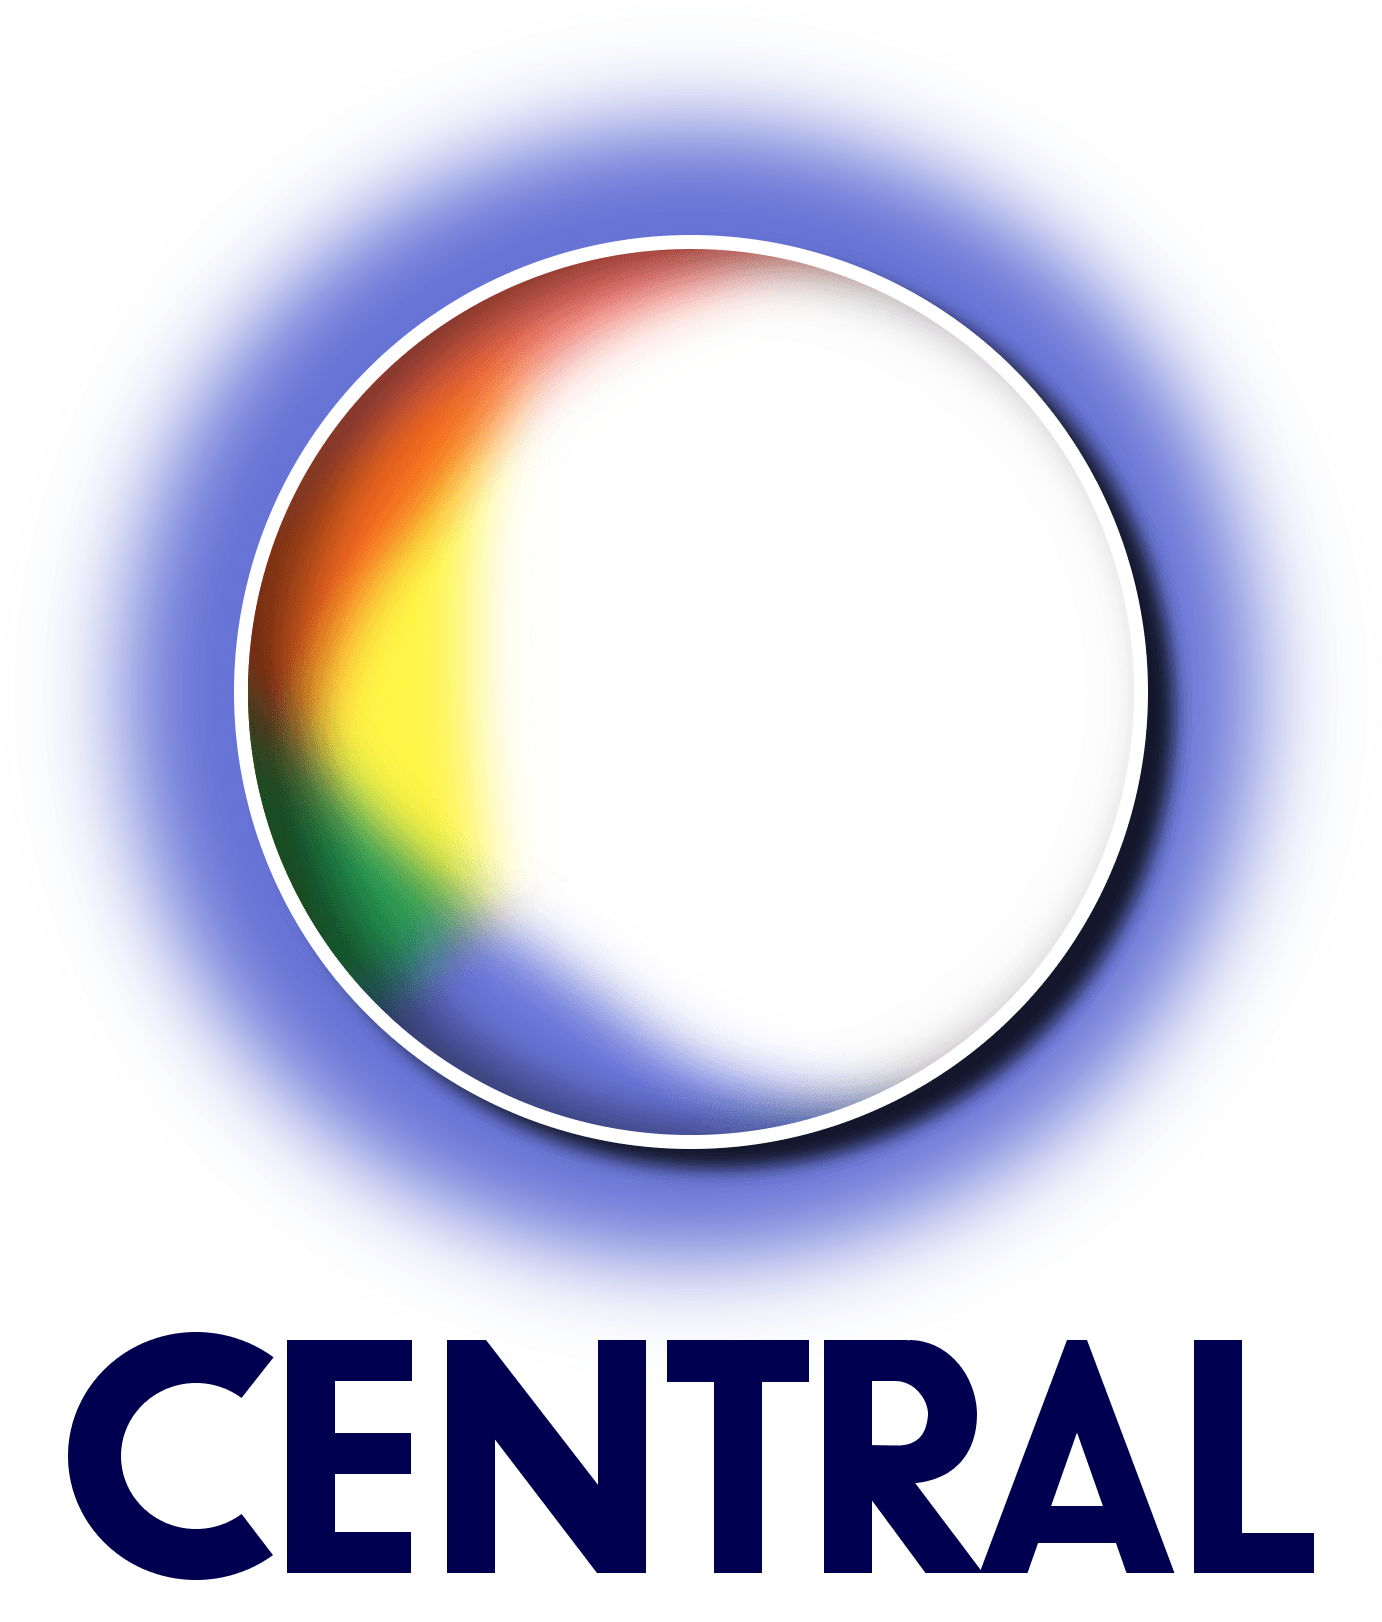 Central Logo - ITV Central. Logopedia 3: The Pantom